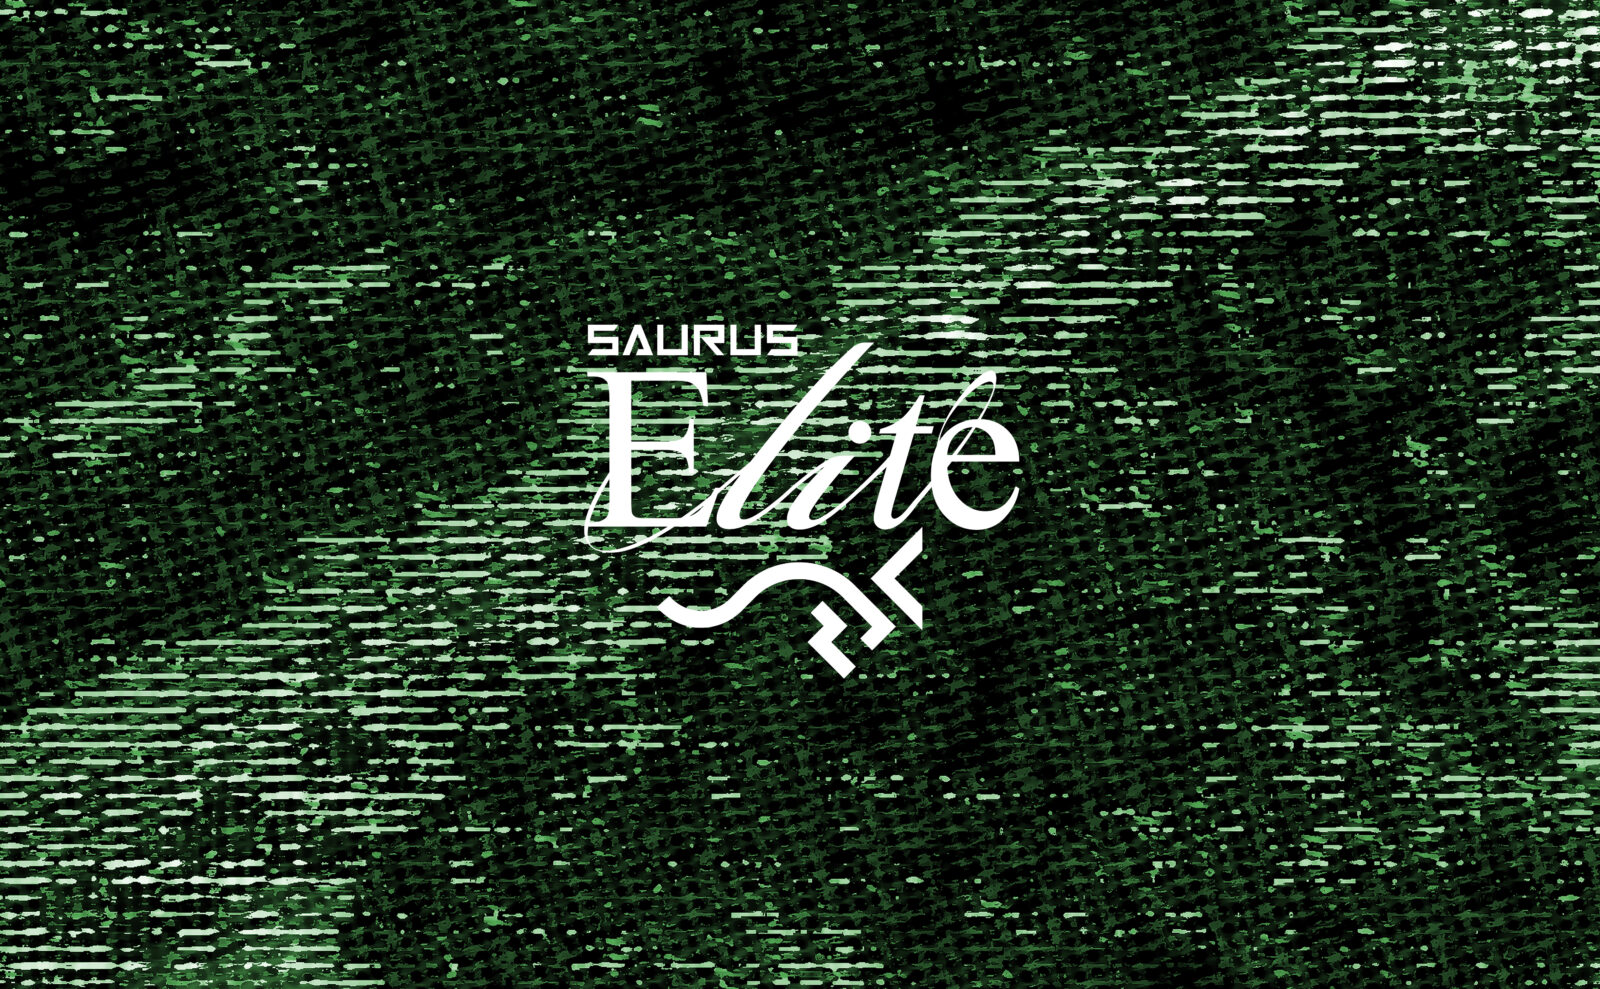 SAURUS_Elite__-12-v2